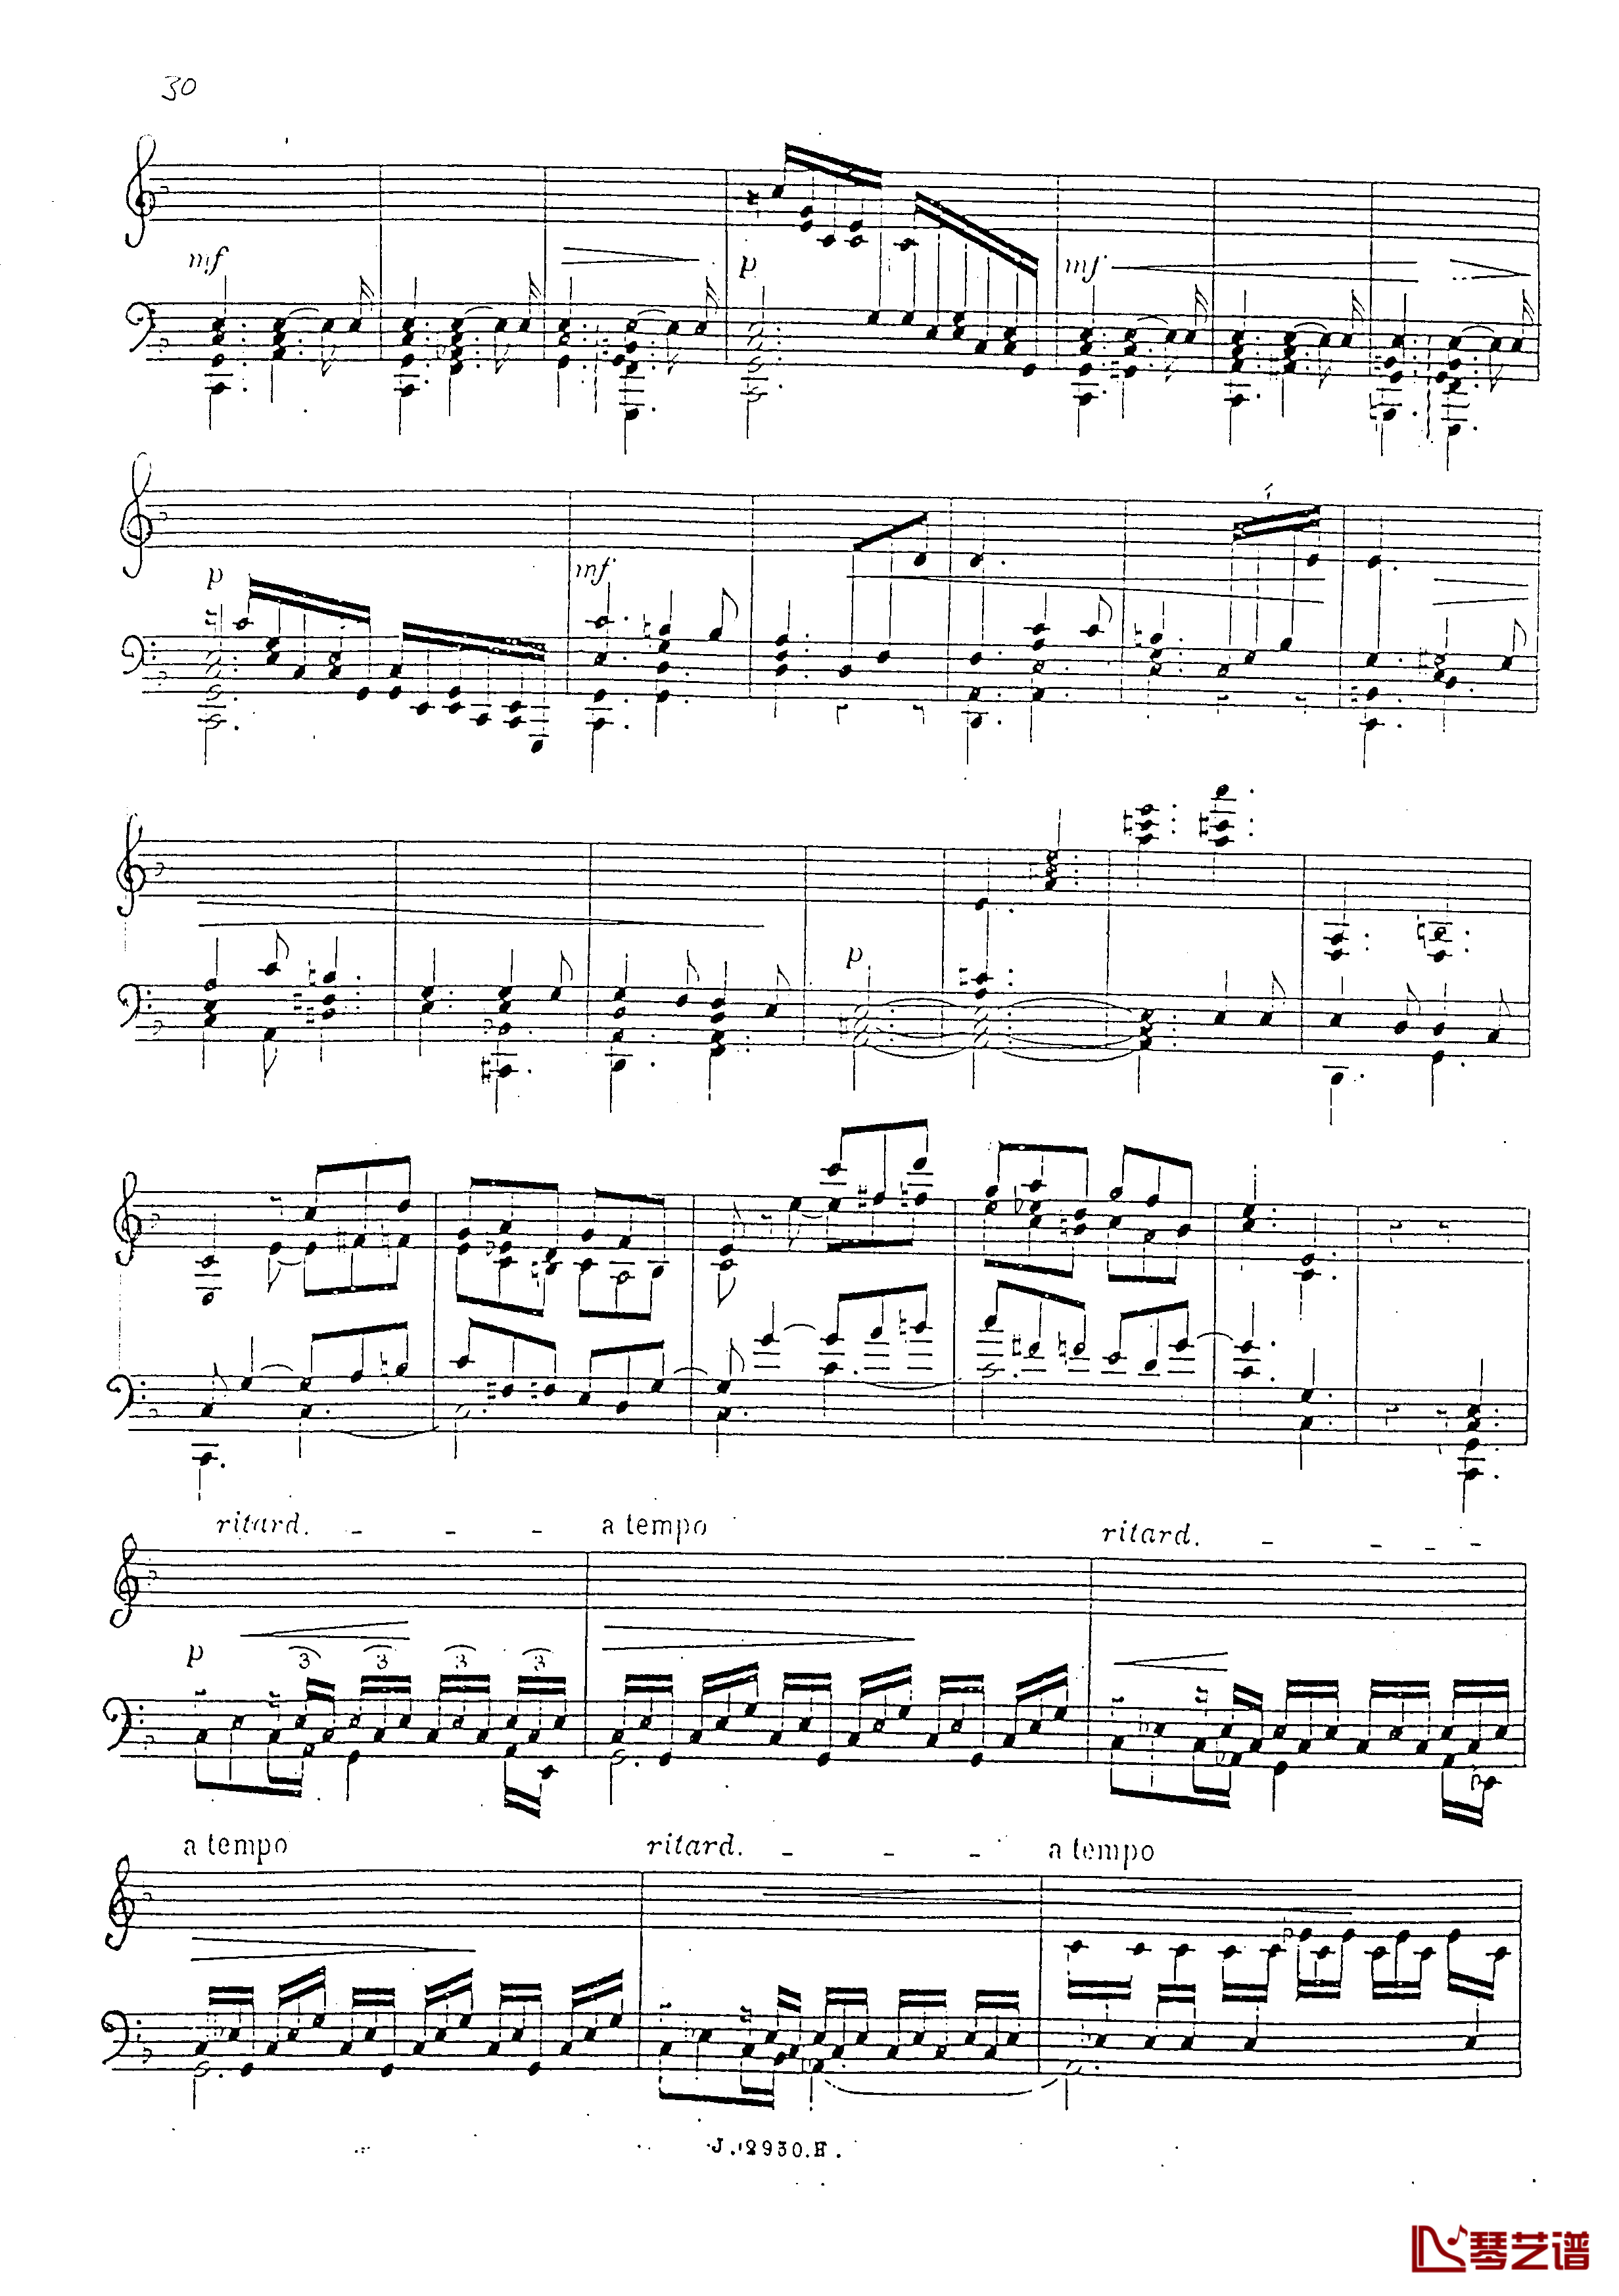 a小调第四钢琴奏鸣曲钢琴谱-安东 鲁宾斯坦- Op.10031